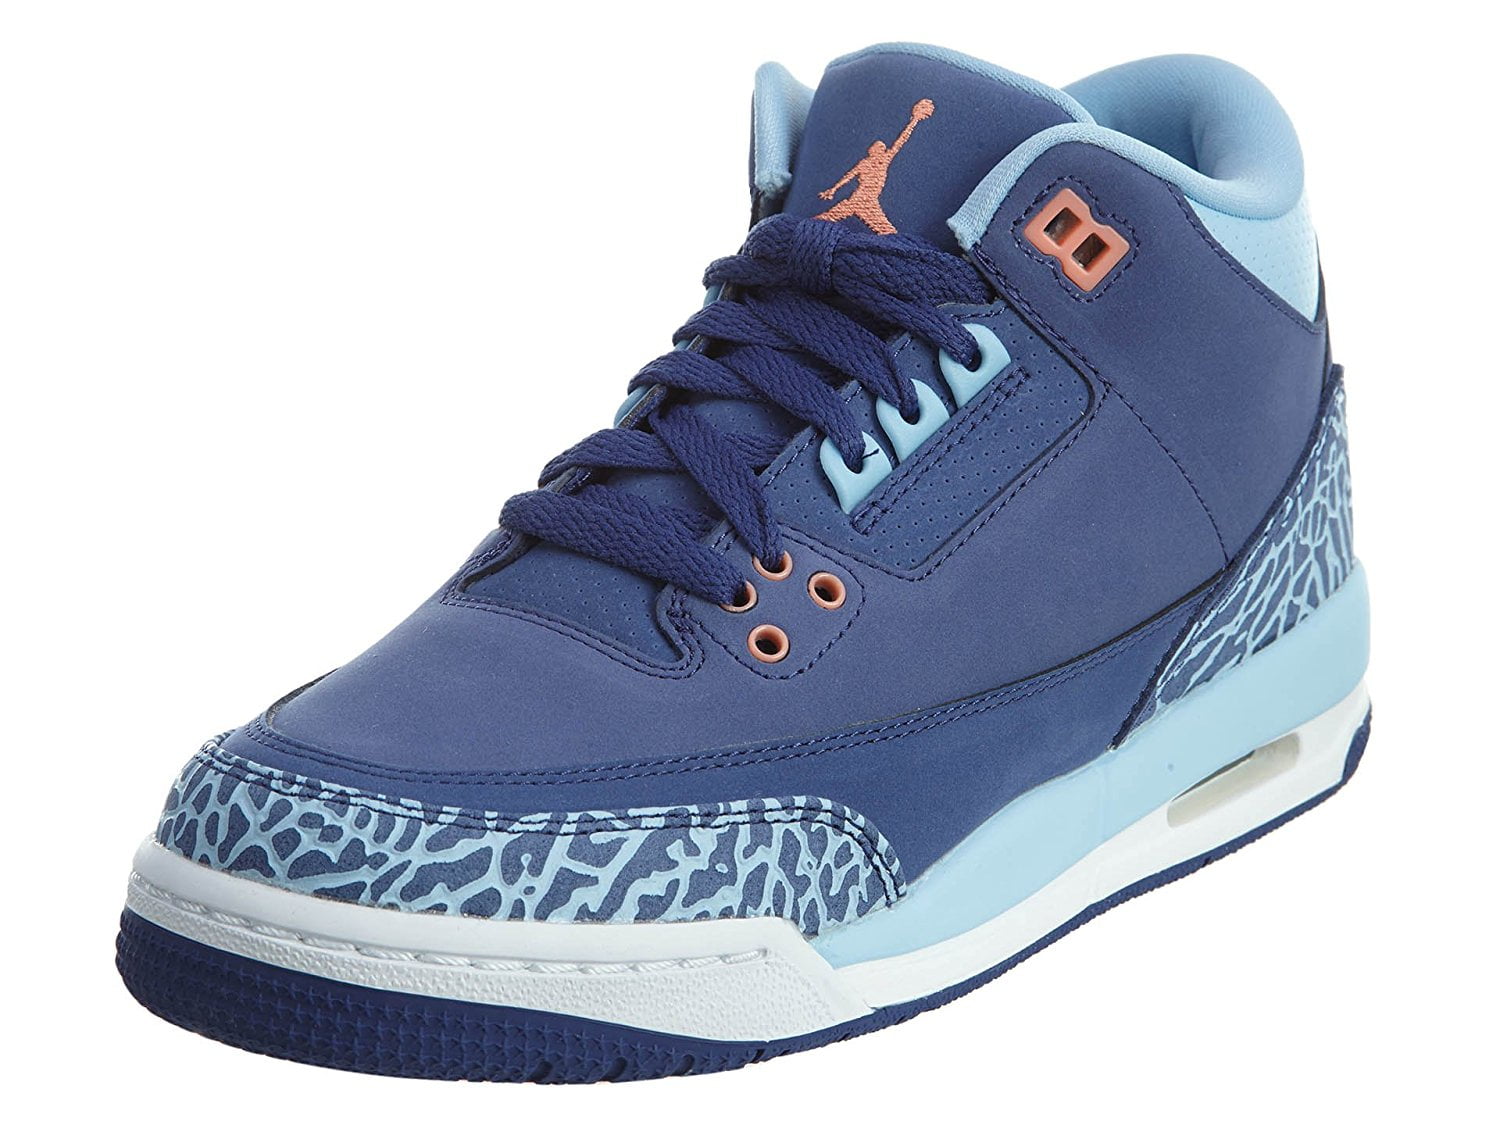 Air Jordan Girls Sneakers 3 RETRO GG 441140-506 - Walmart.com